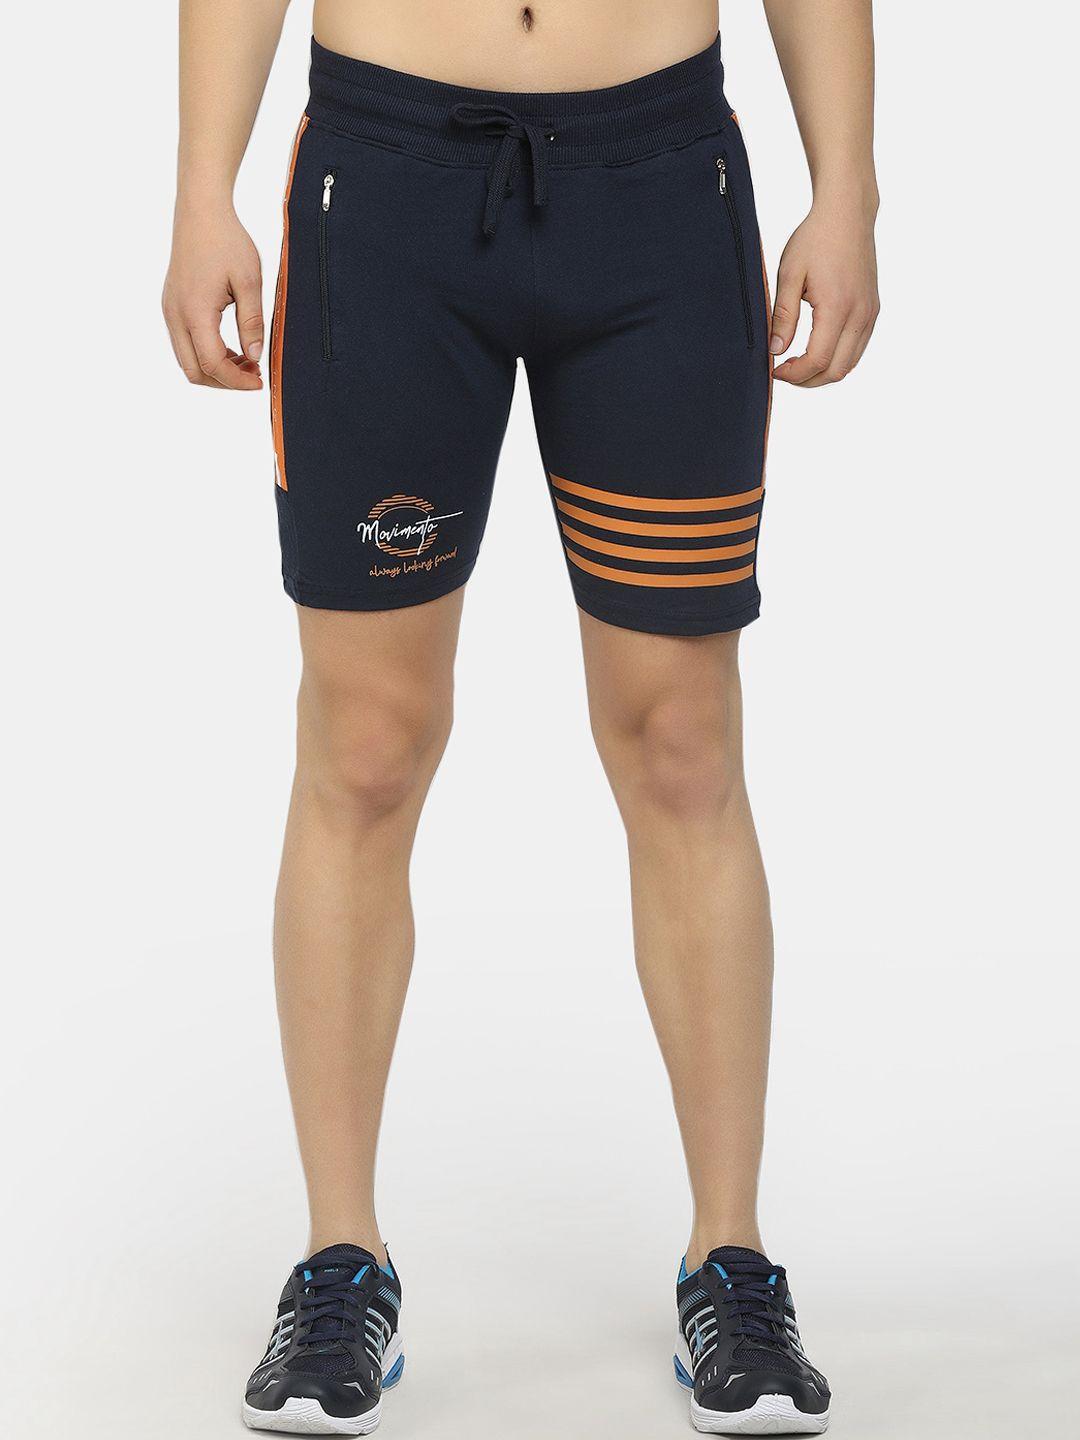 v-mart men navy blue printed sports shorts